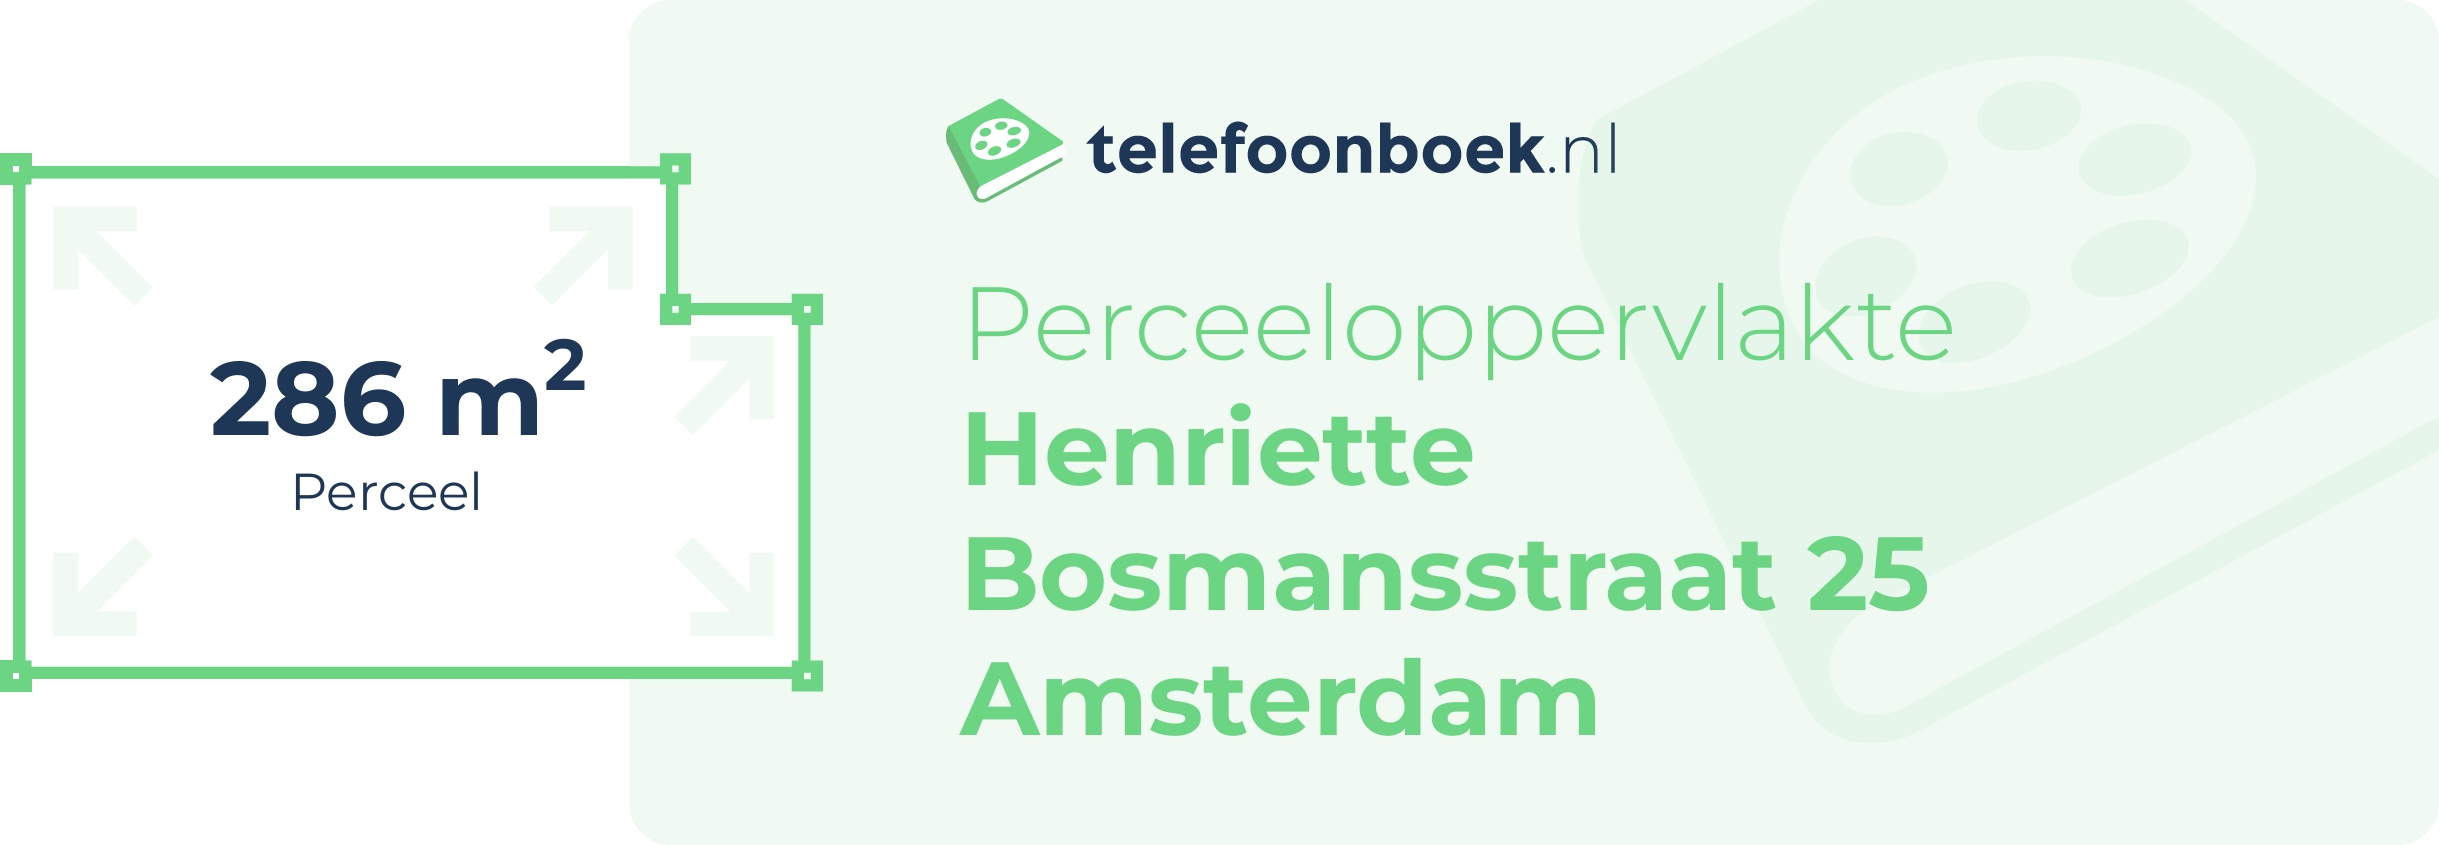 Perceeloppervlakte Henriette Bosmansstraat 25 Amsterdam